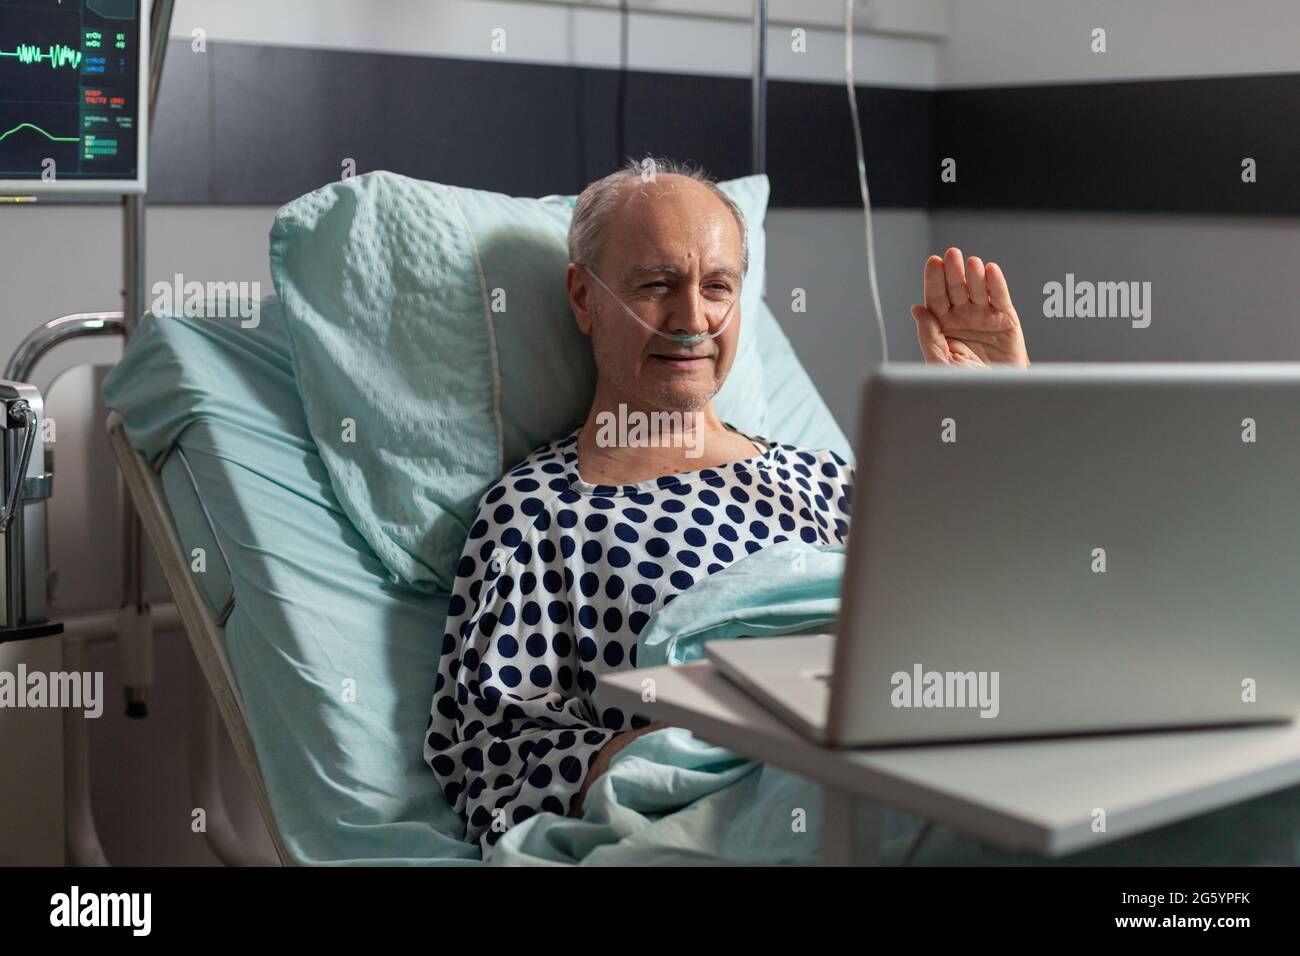 Ritratto dell'uomo anziano che saluta la famiglia a una macchina fotografica del portatile che si trova nel letto dell'ospedale, dopo la diagnosi della malattia, che respira con il tubo dell'ossigeno. Moderno eqipment per il monitoraggio della frequenza cardiaca paciente durante il recupero. Foto Stock